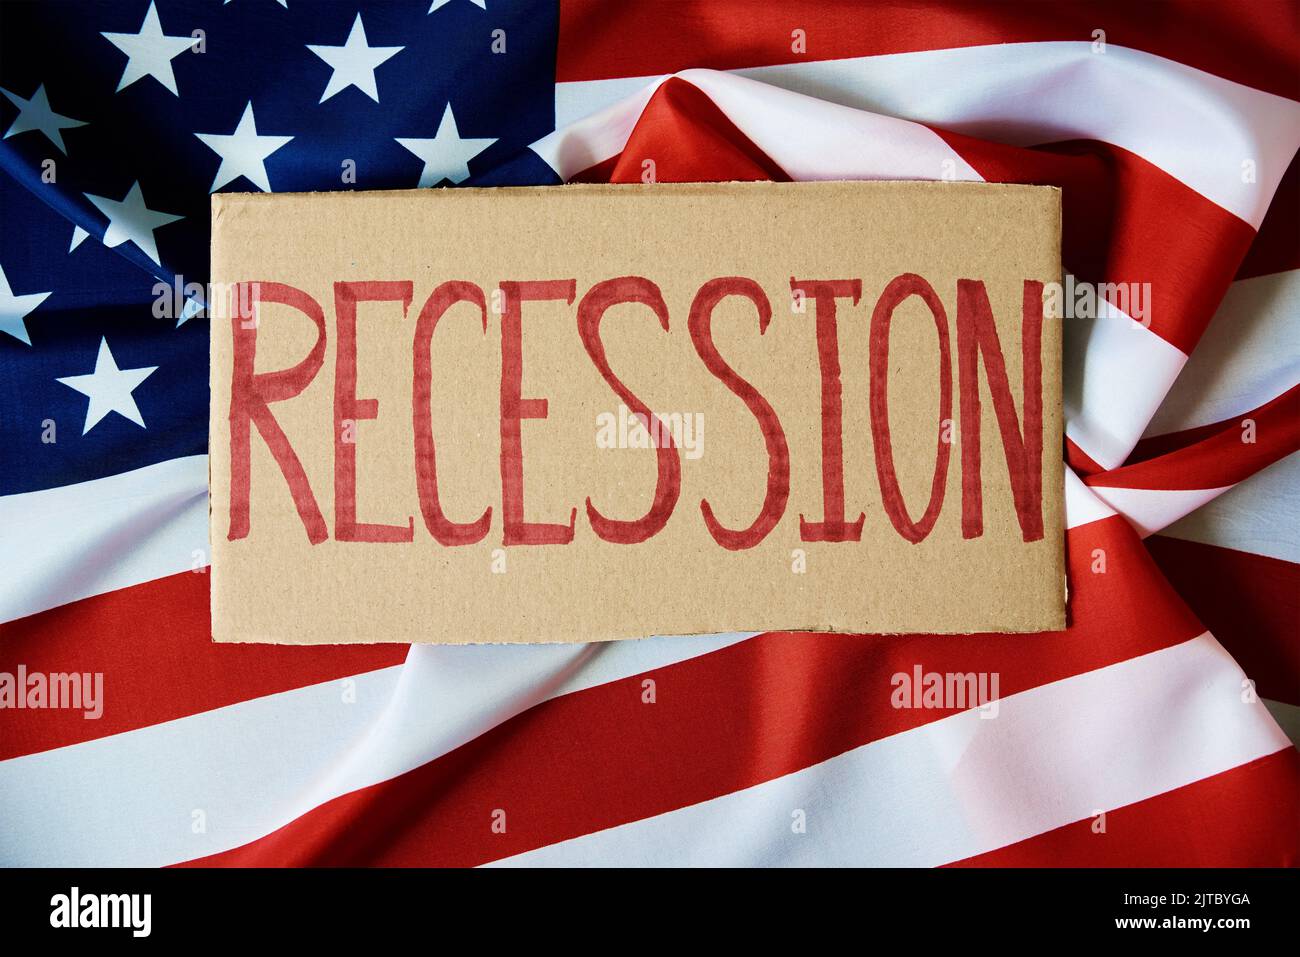 Concetto di recessione e problema finanziario nel sistema bancario degli Stati Uniti e crisi economica mondiale, cartone con parola recessione contro bandiera nazionale americana Foto Stock